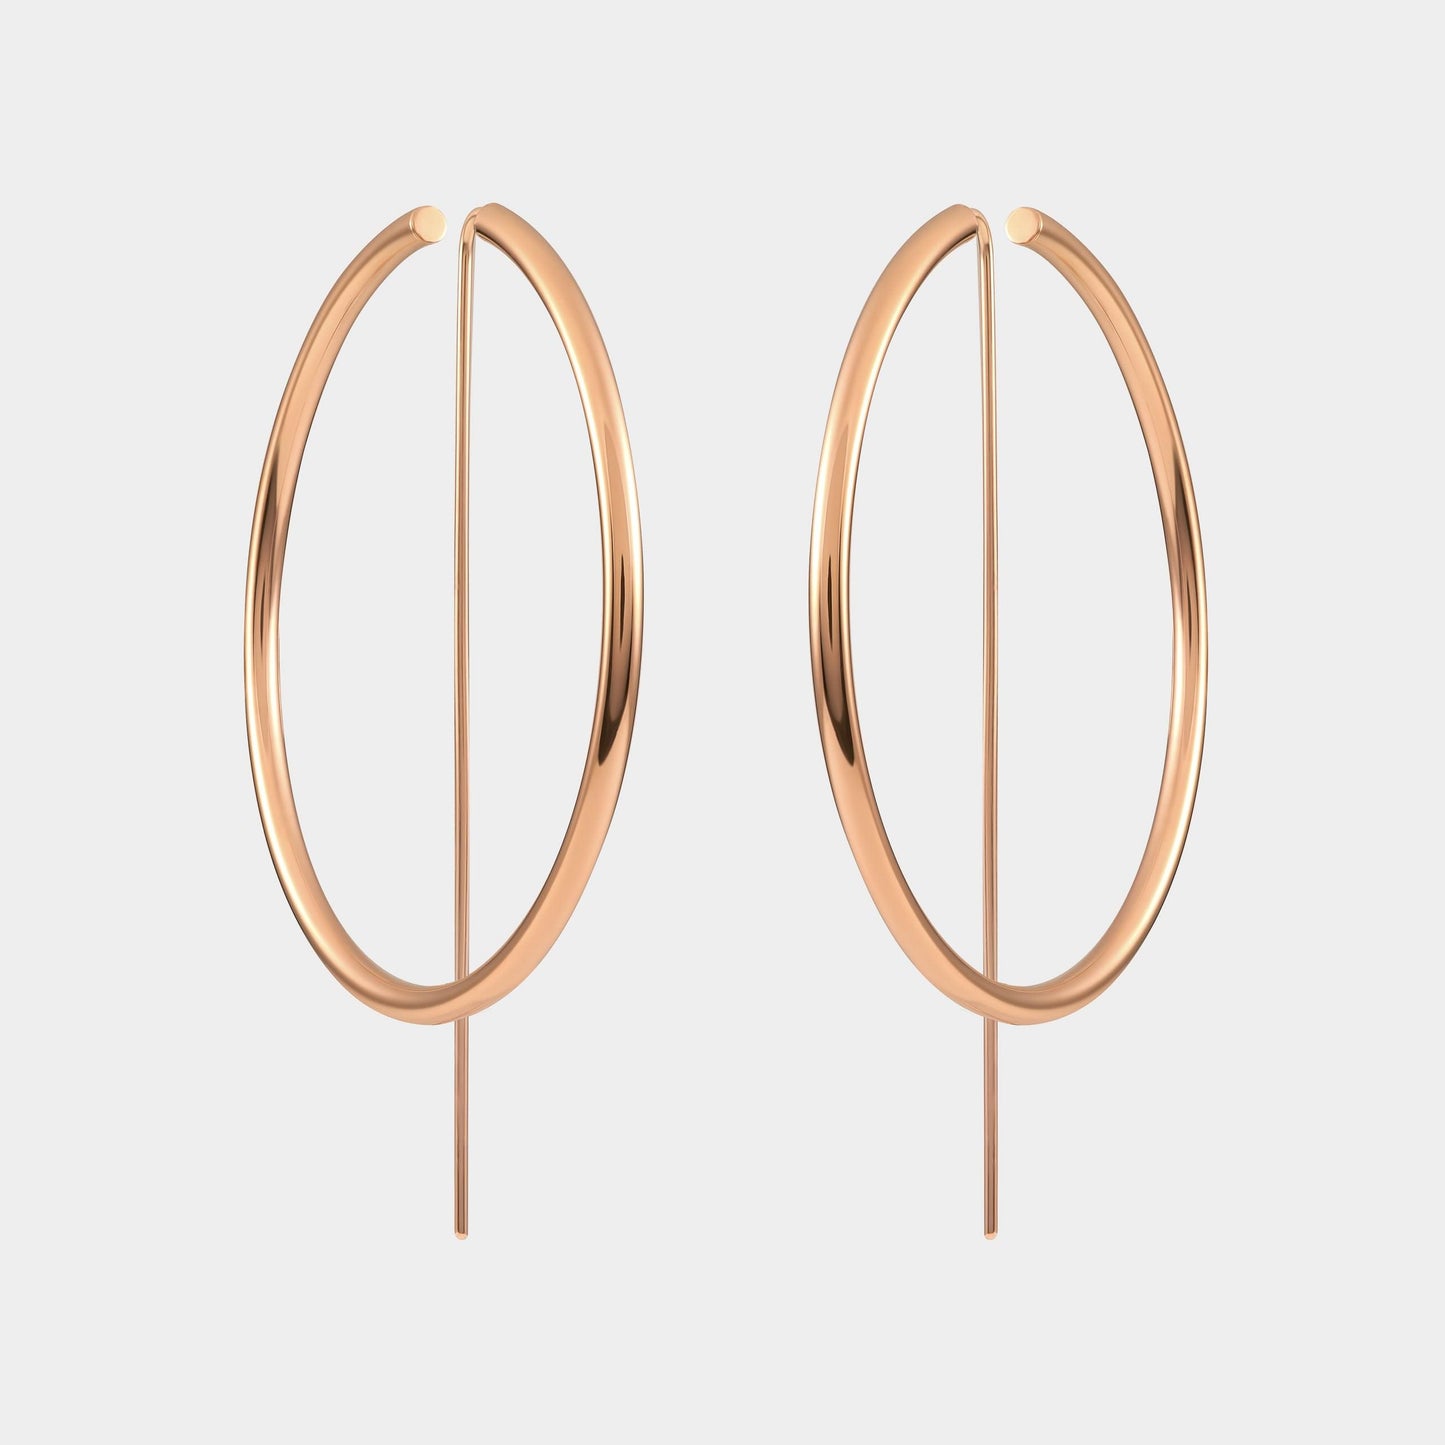 Rose Gold Large Hoop Earrings | Large Hoops | Oversized Earrings | JACLYN GARCÍA SUÁREZ Jewelry